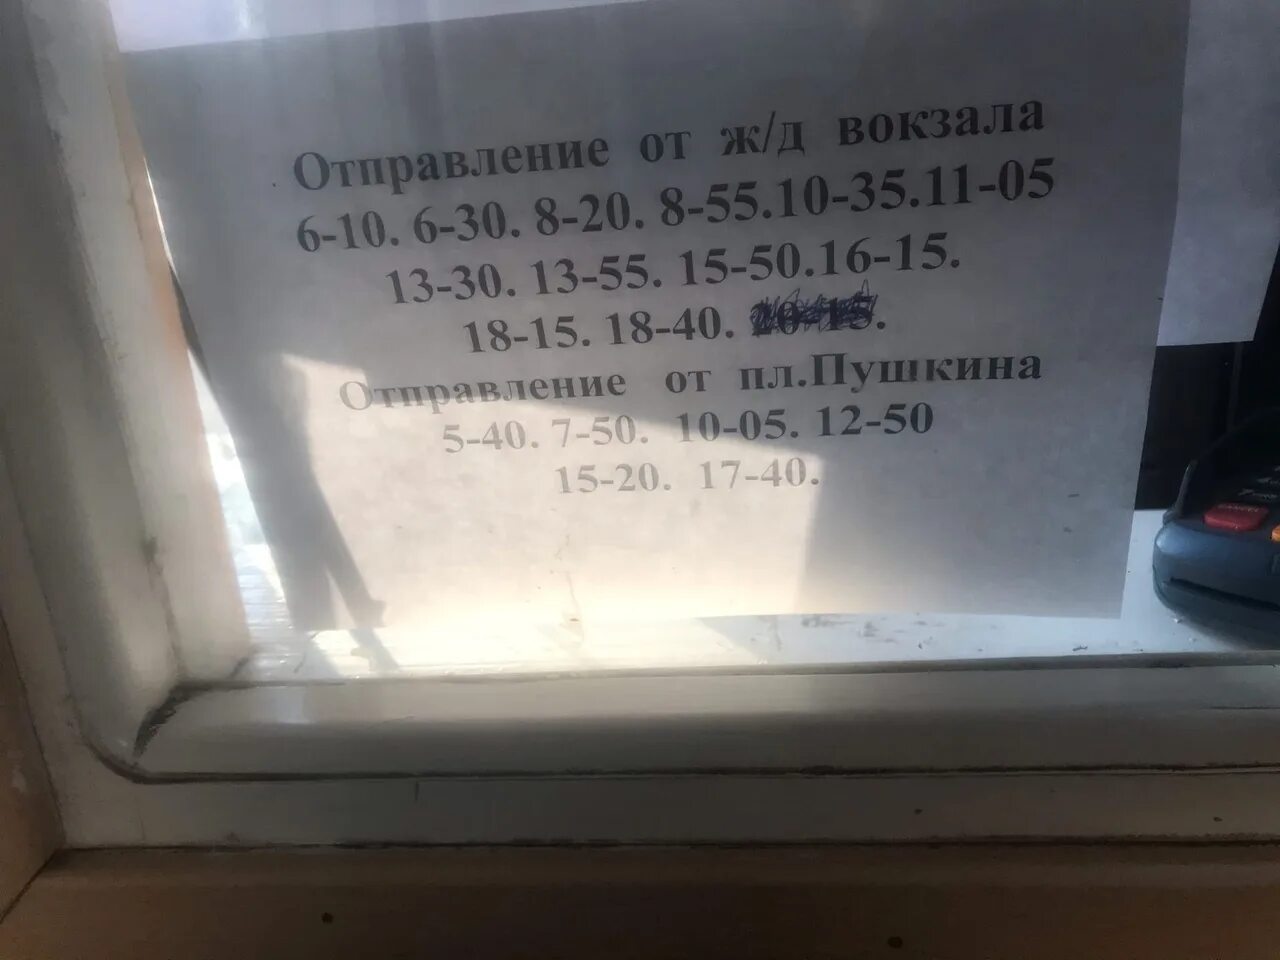 Иваново серебряный город автобус